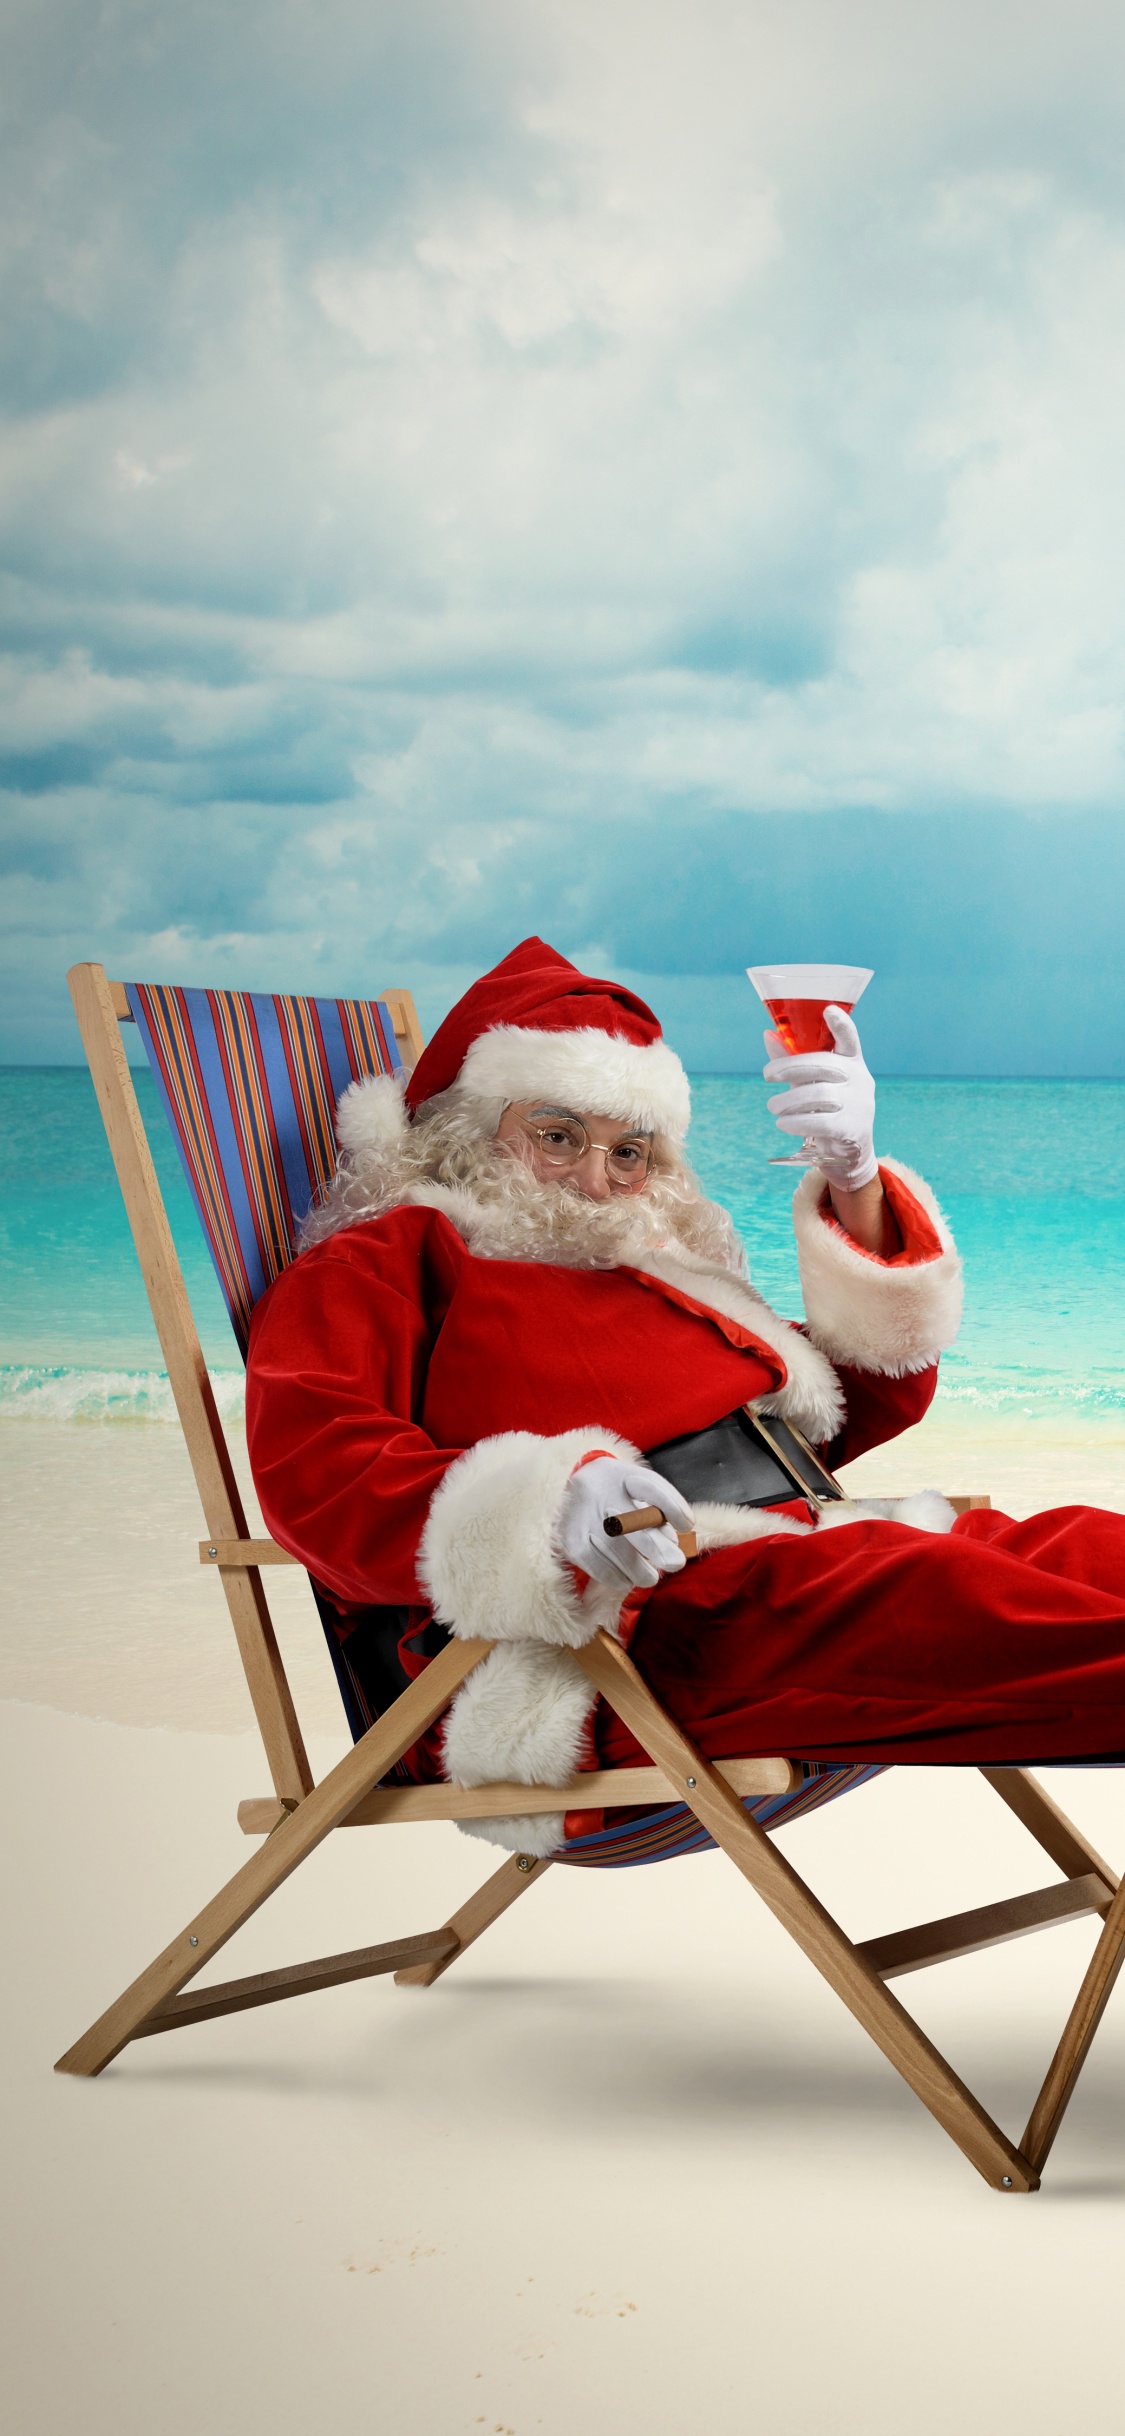 Weihnachtsmann, Weihnachten, Strand, Meer, Urlaub. Wallpaper in 1125x2436 Resolution